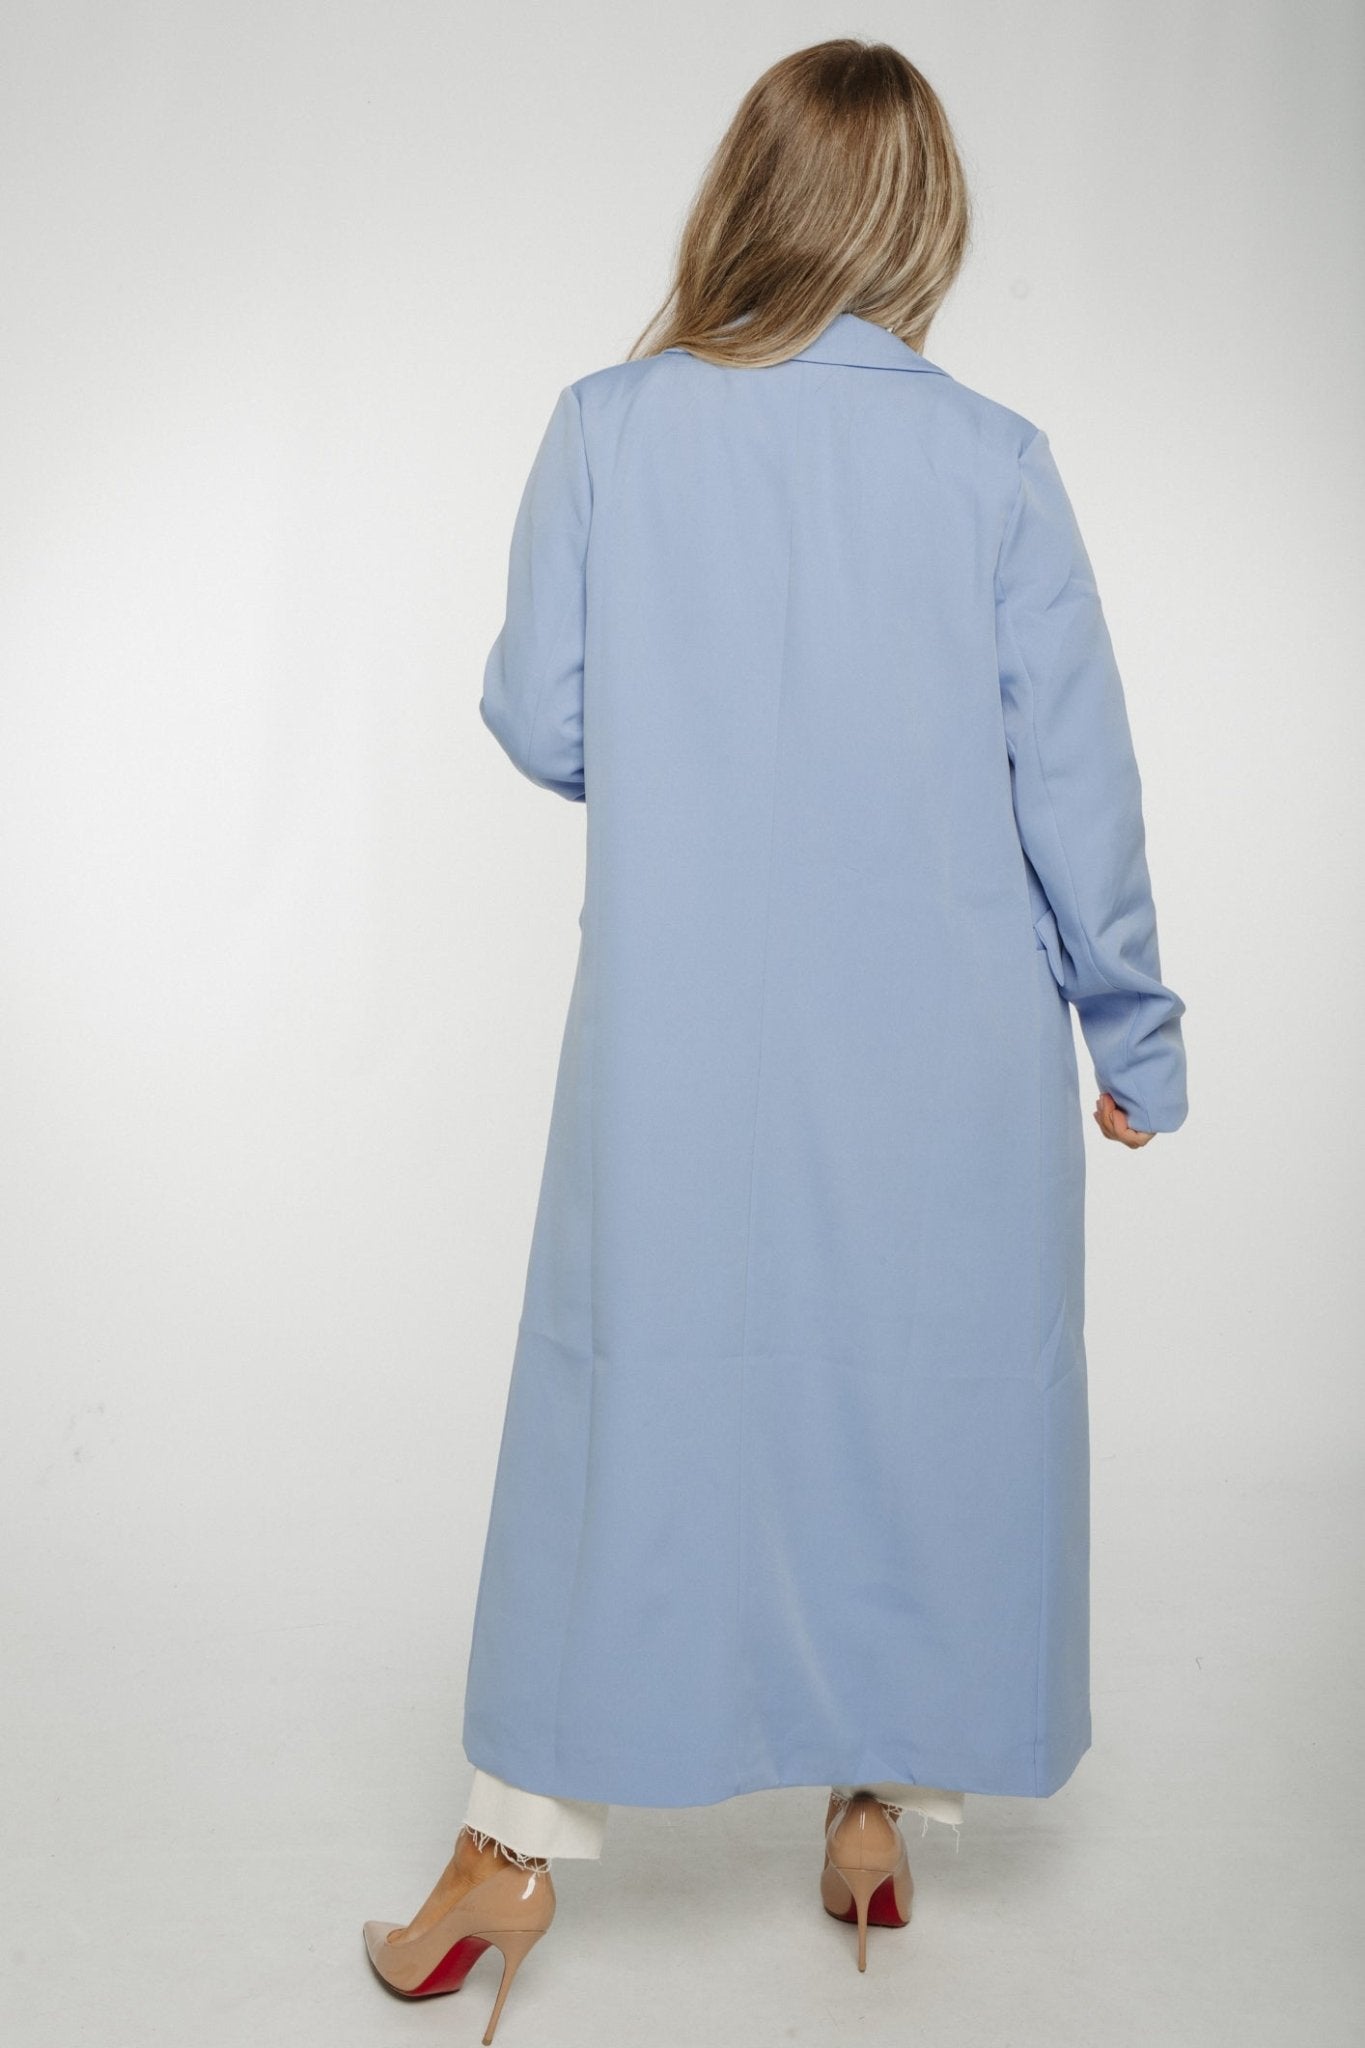 Jayme Longline Jacket In Powder Blue - The Walk in Wardrobe